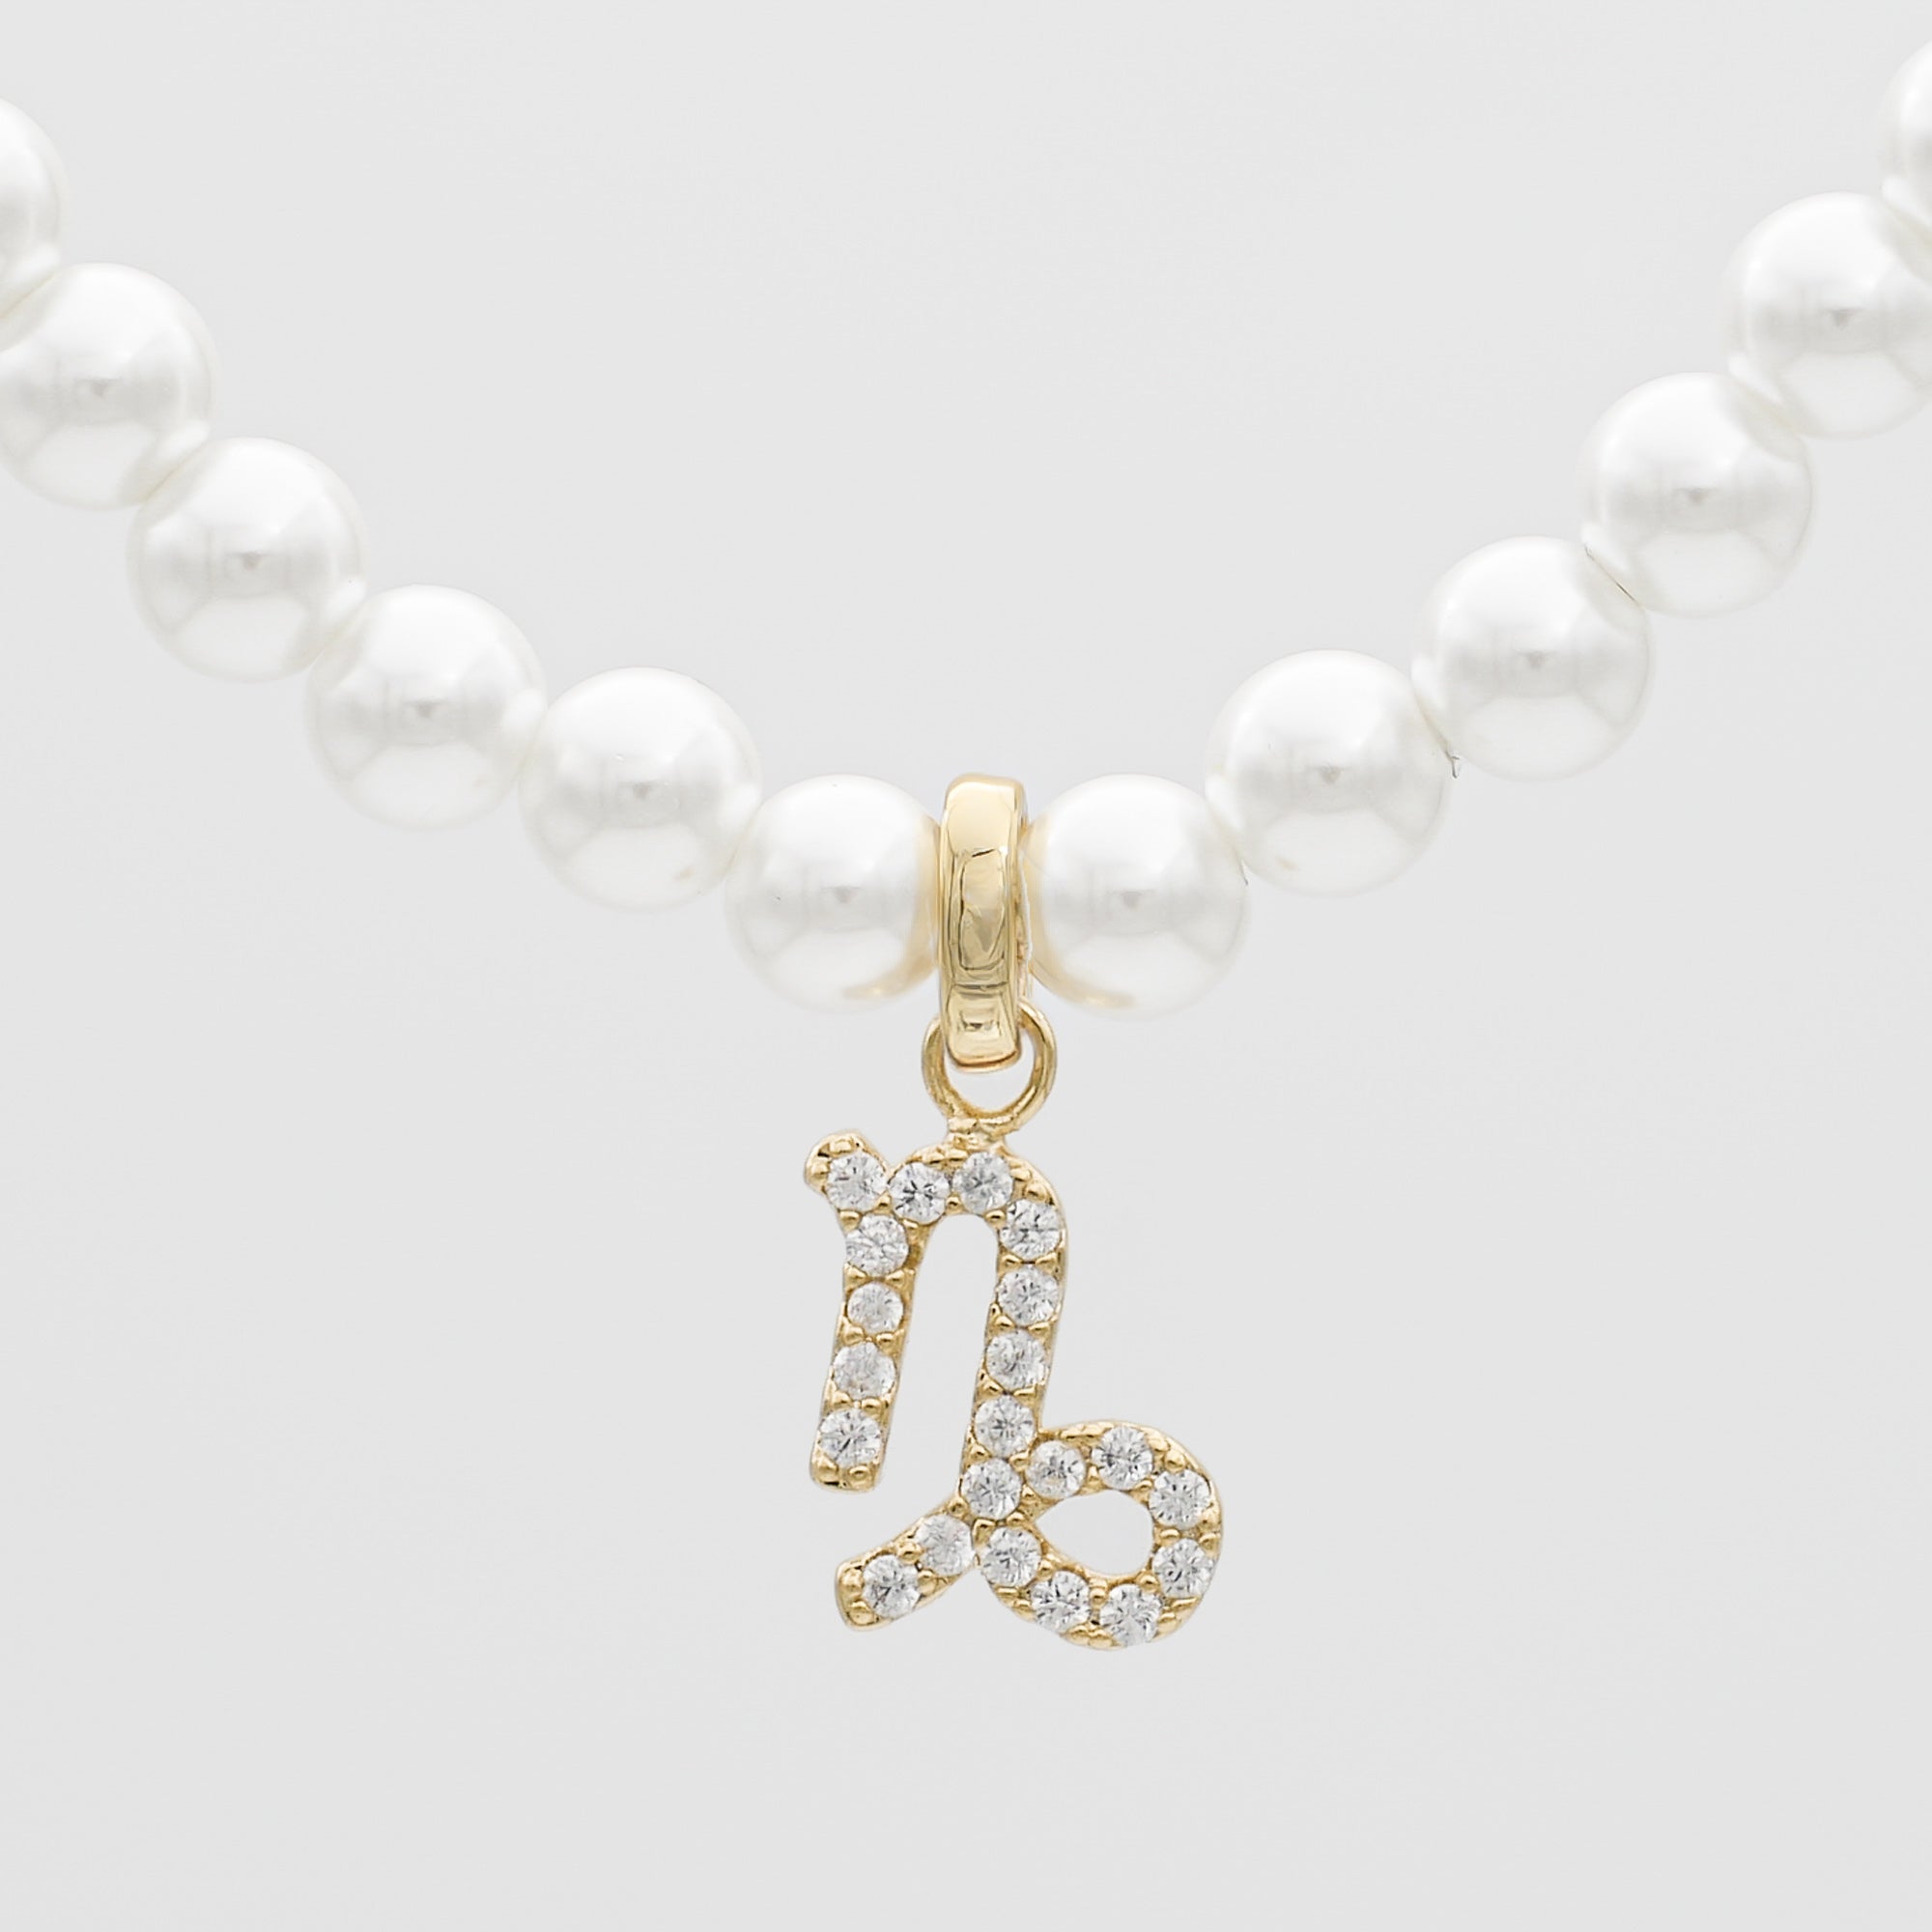 ICY Pearl Zodiac Bracelet